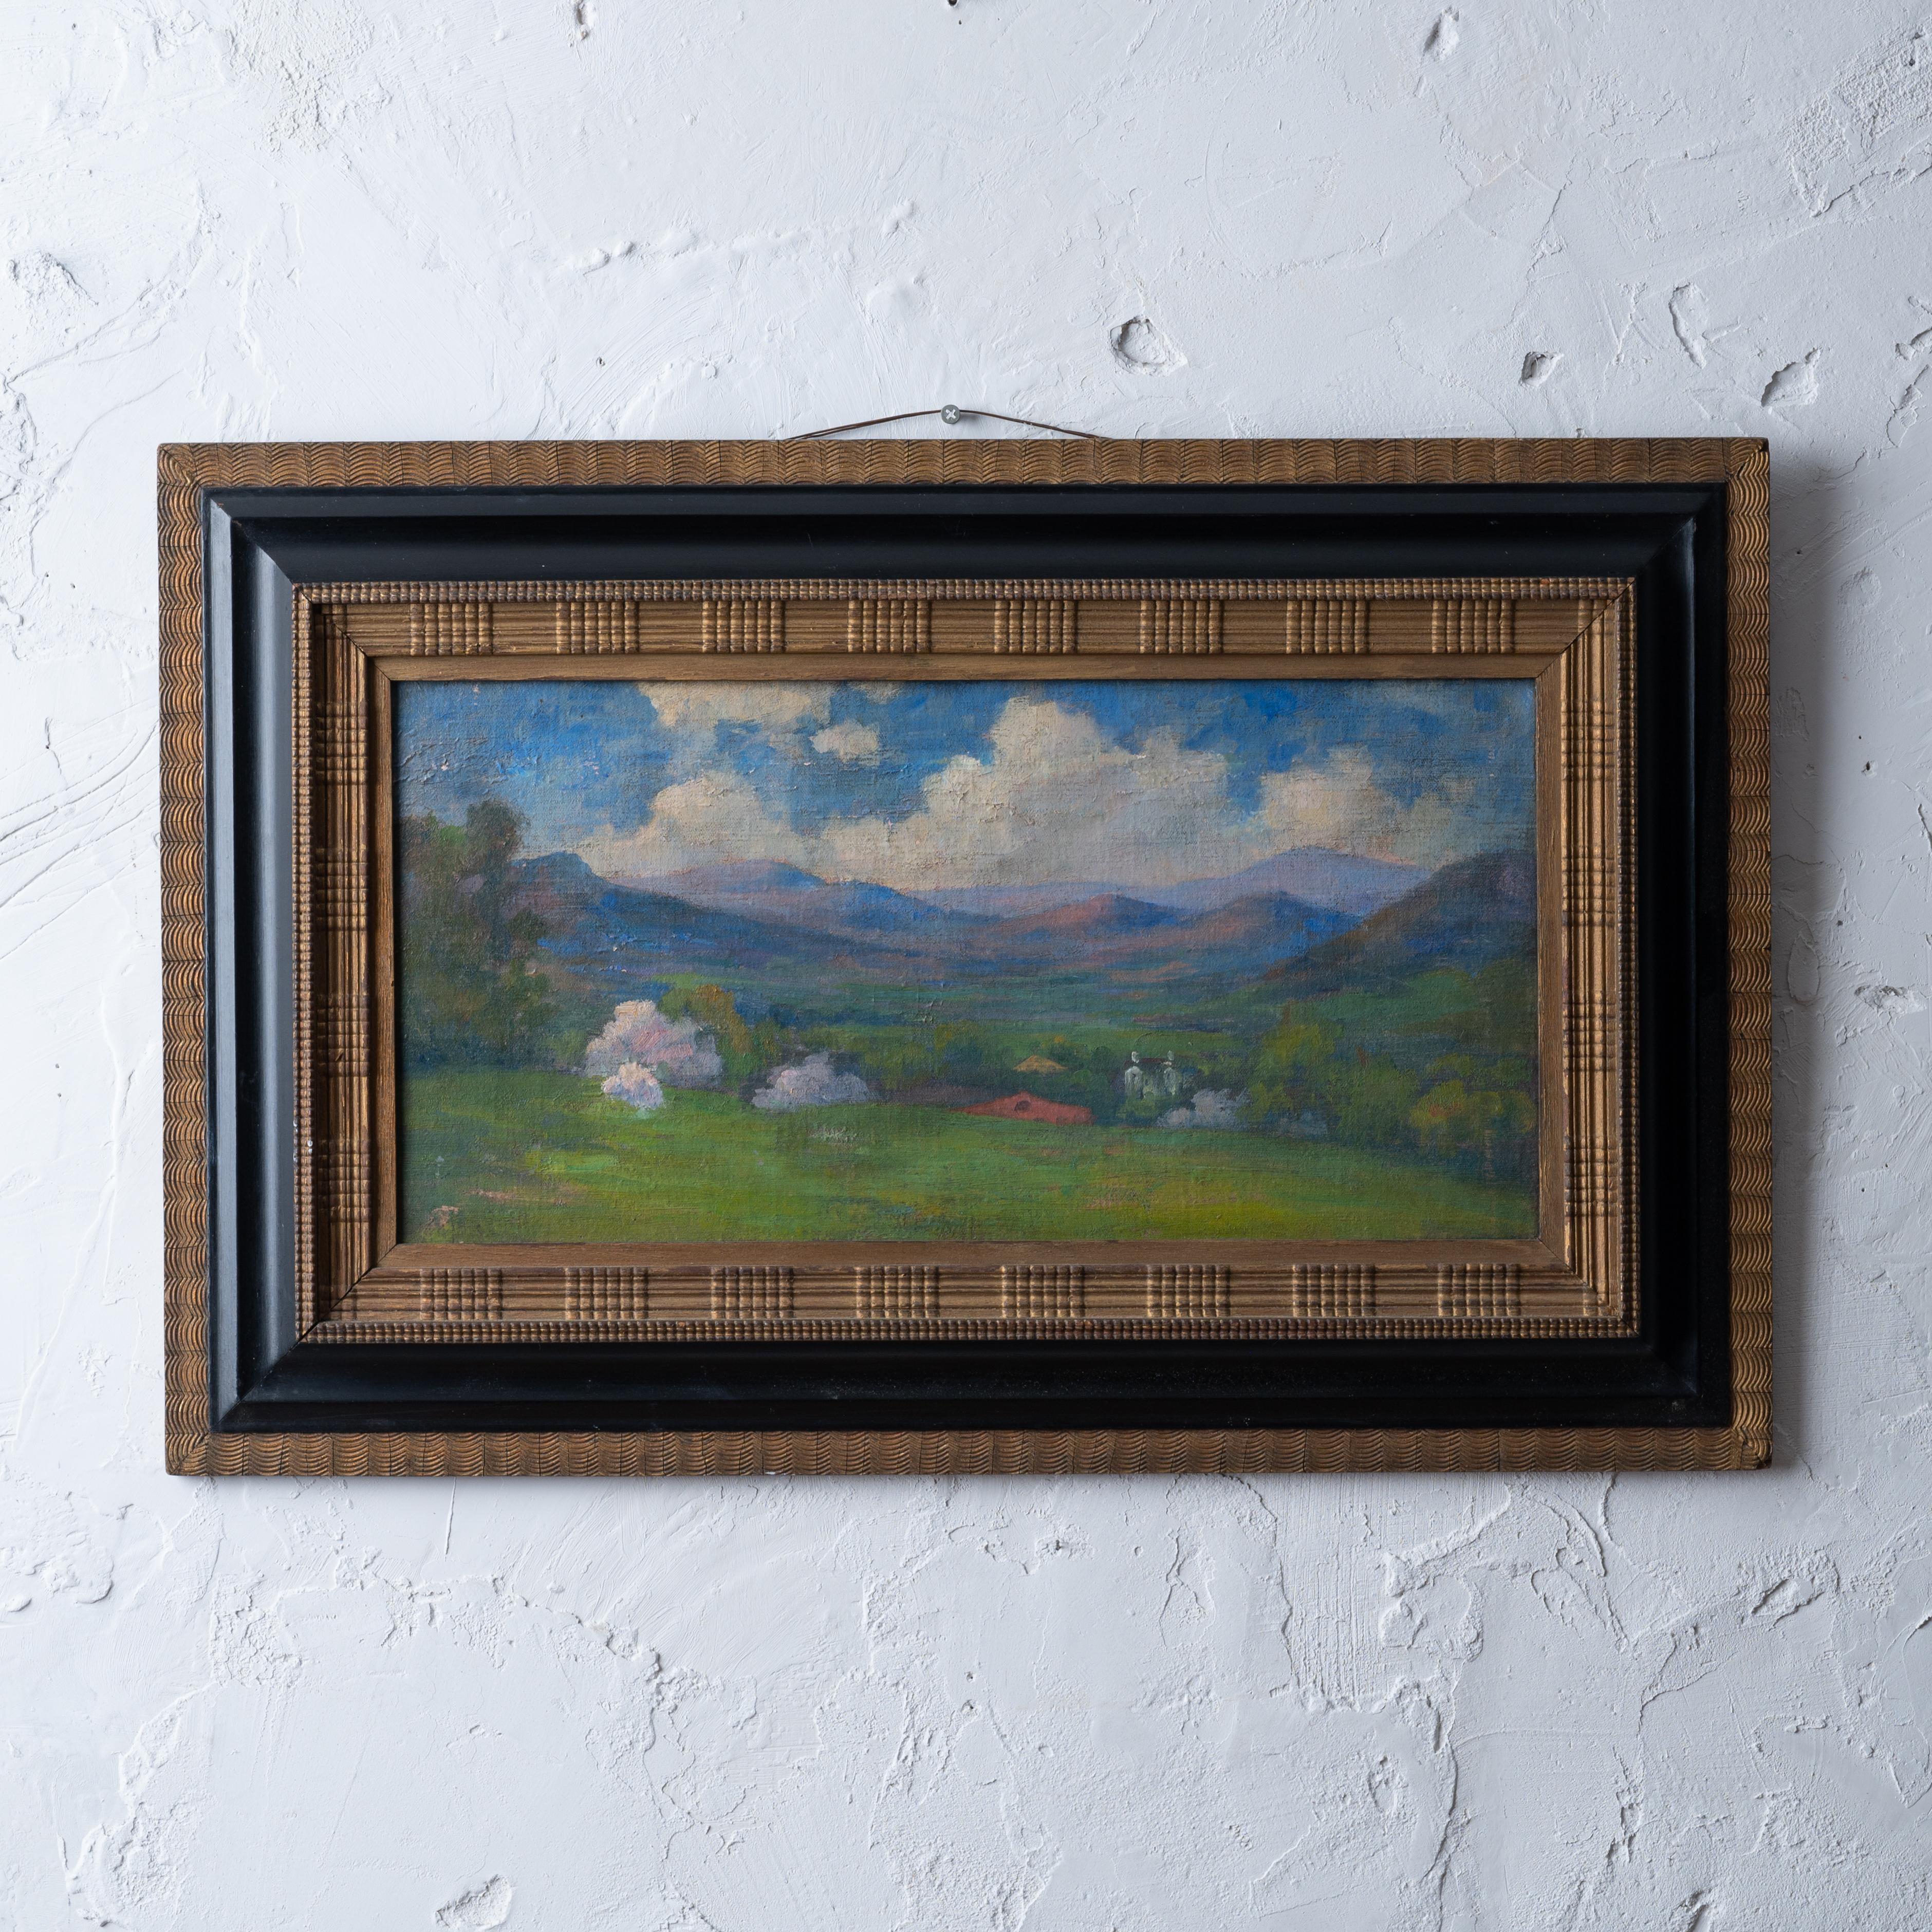 William Francklyn Paris
(Américain, 1871-1954)

Paysage impressionniste, vers 1890, dans un cadre hollandais à moulures ondulées. 
Il s'agit d'une belle petite pièce et de la seule peinture enregistrée de l'architecte qui a étudié avec William